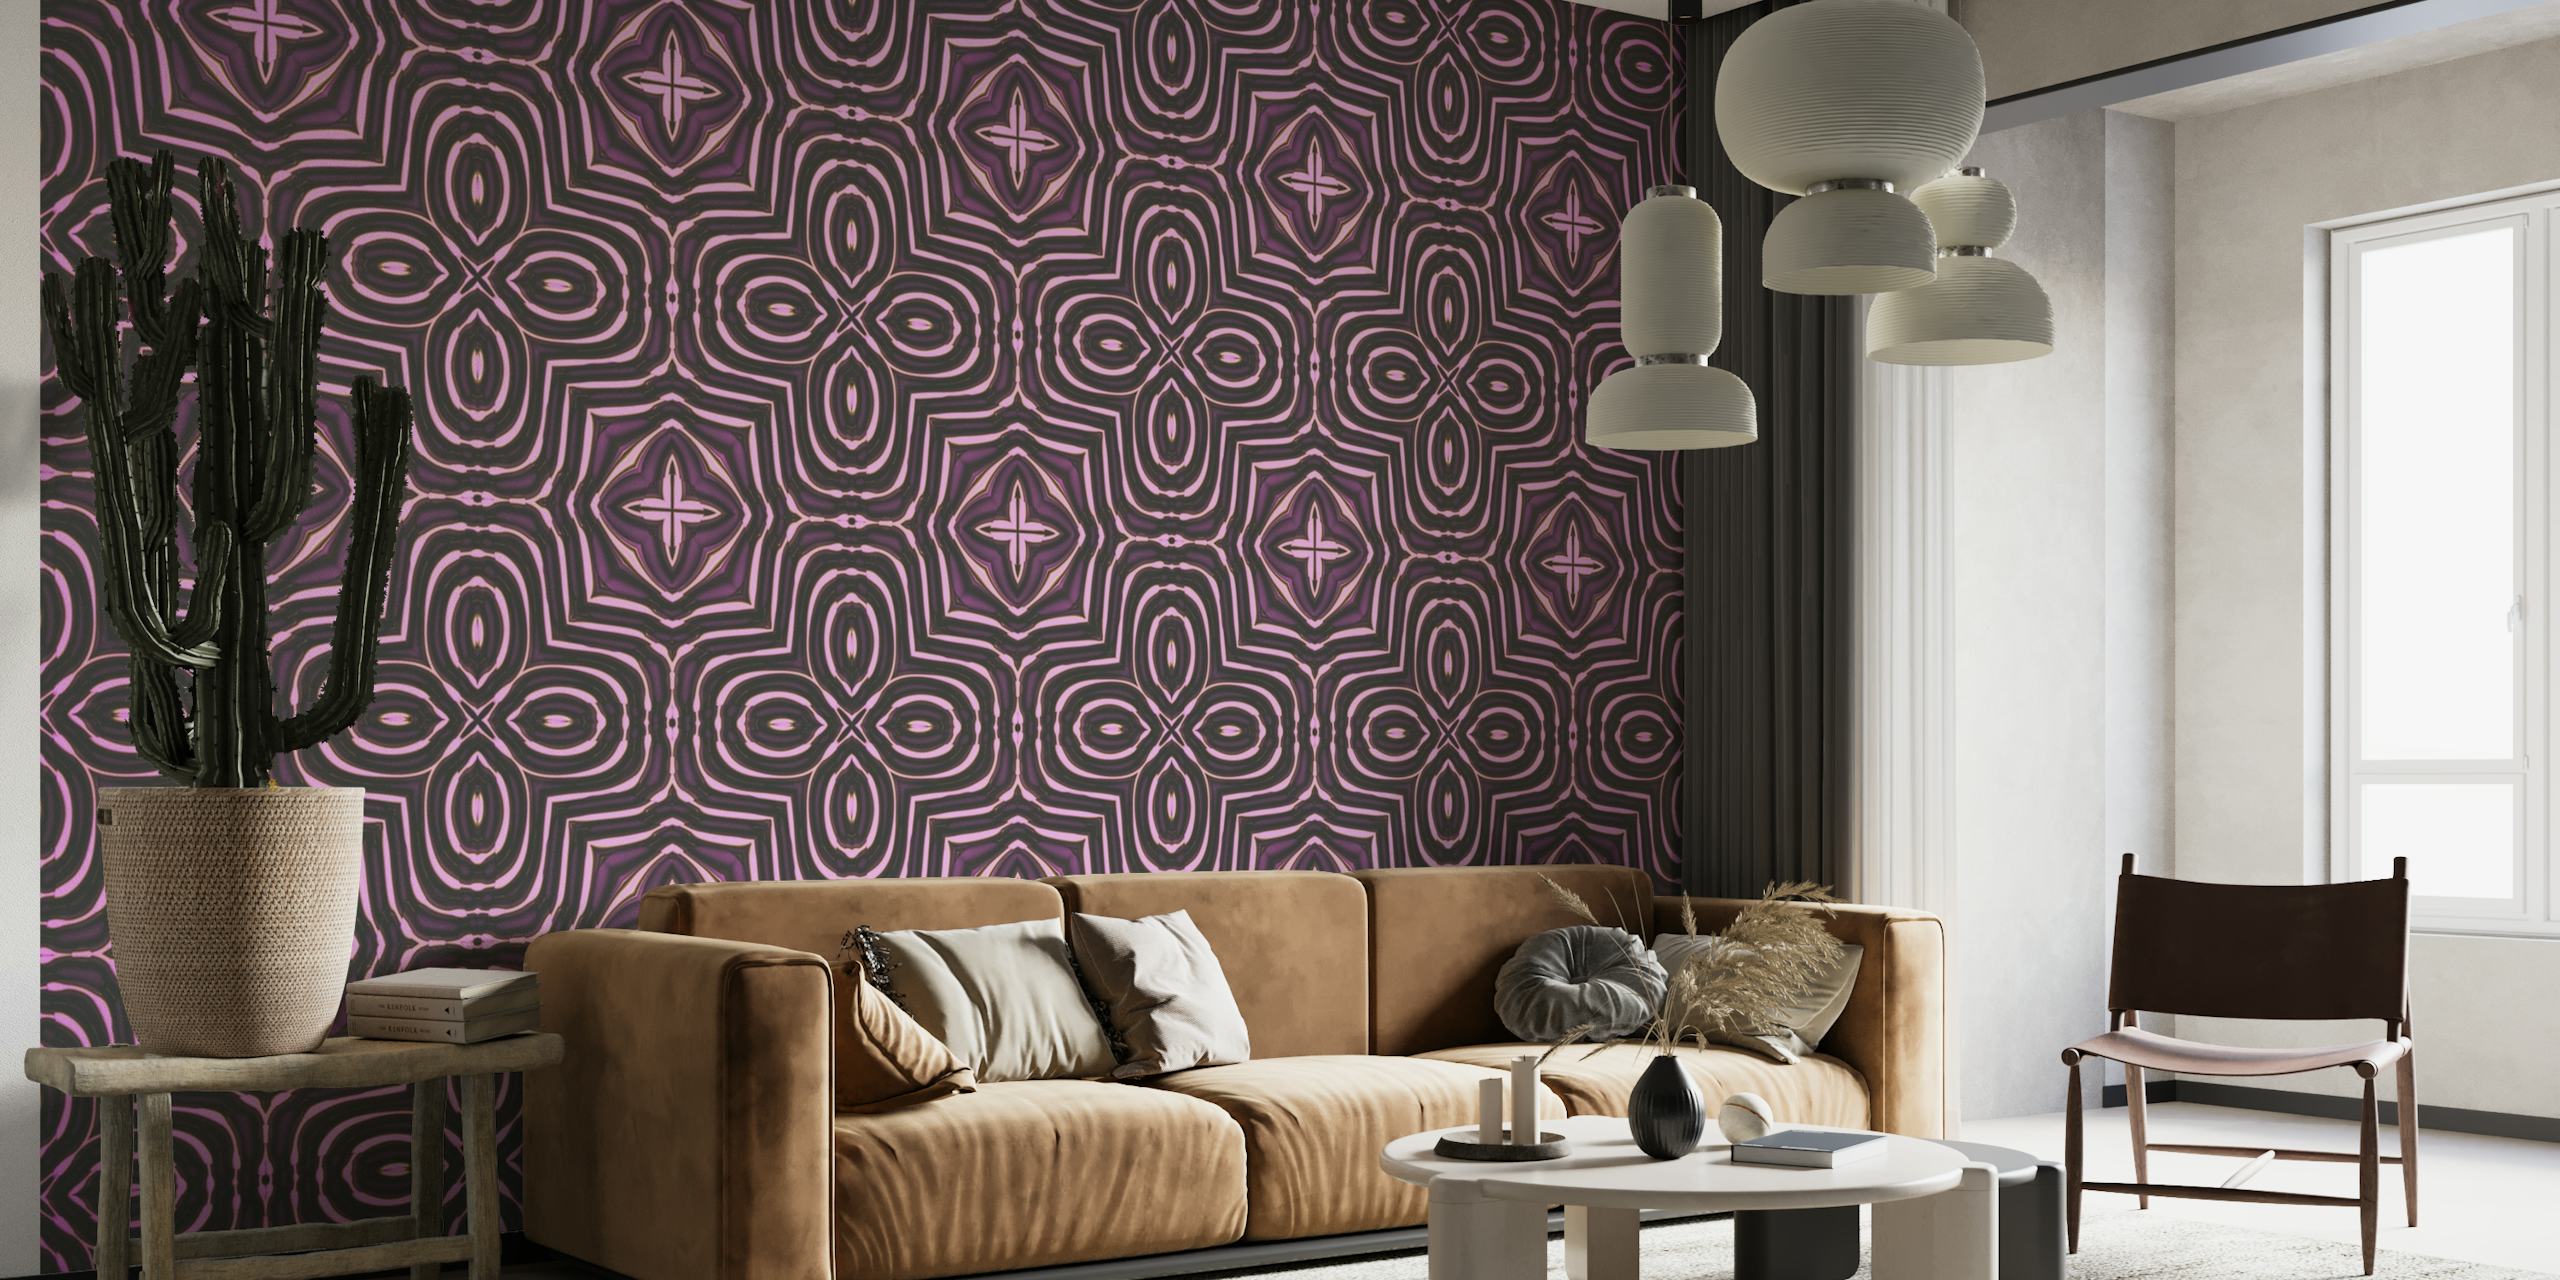 Oosterse tegelpatroon muurschildering met ingewikkelde geometrische ontwerpen in paarse tinten